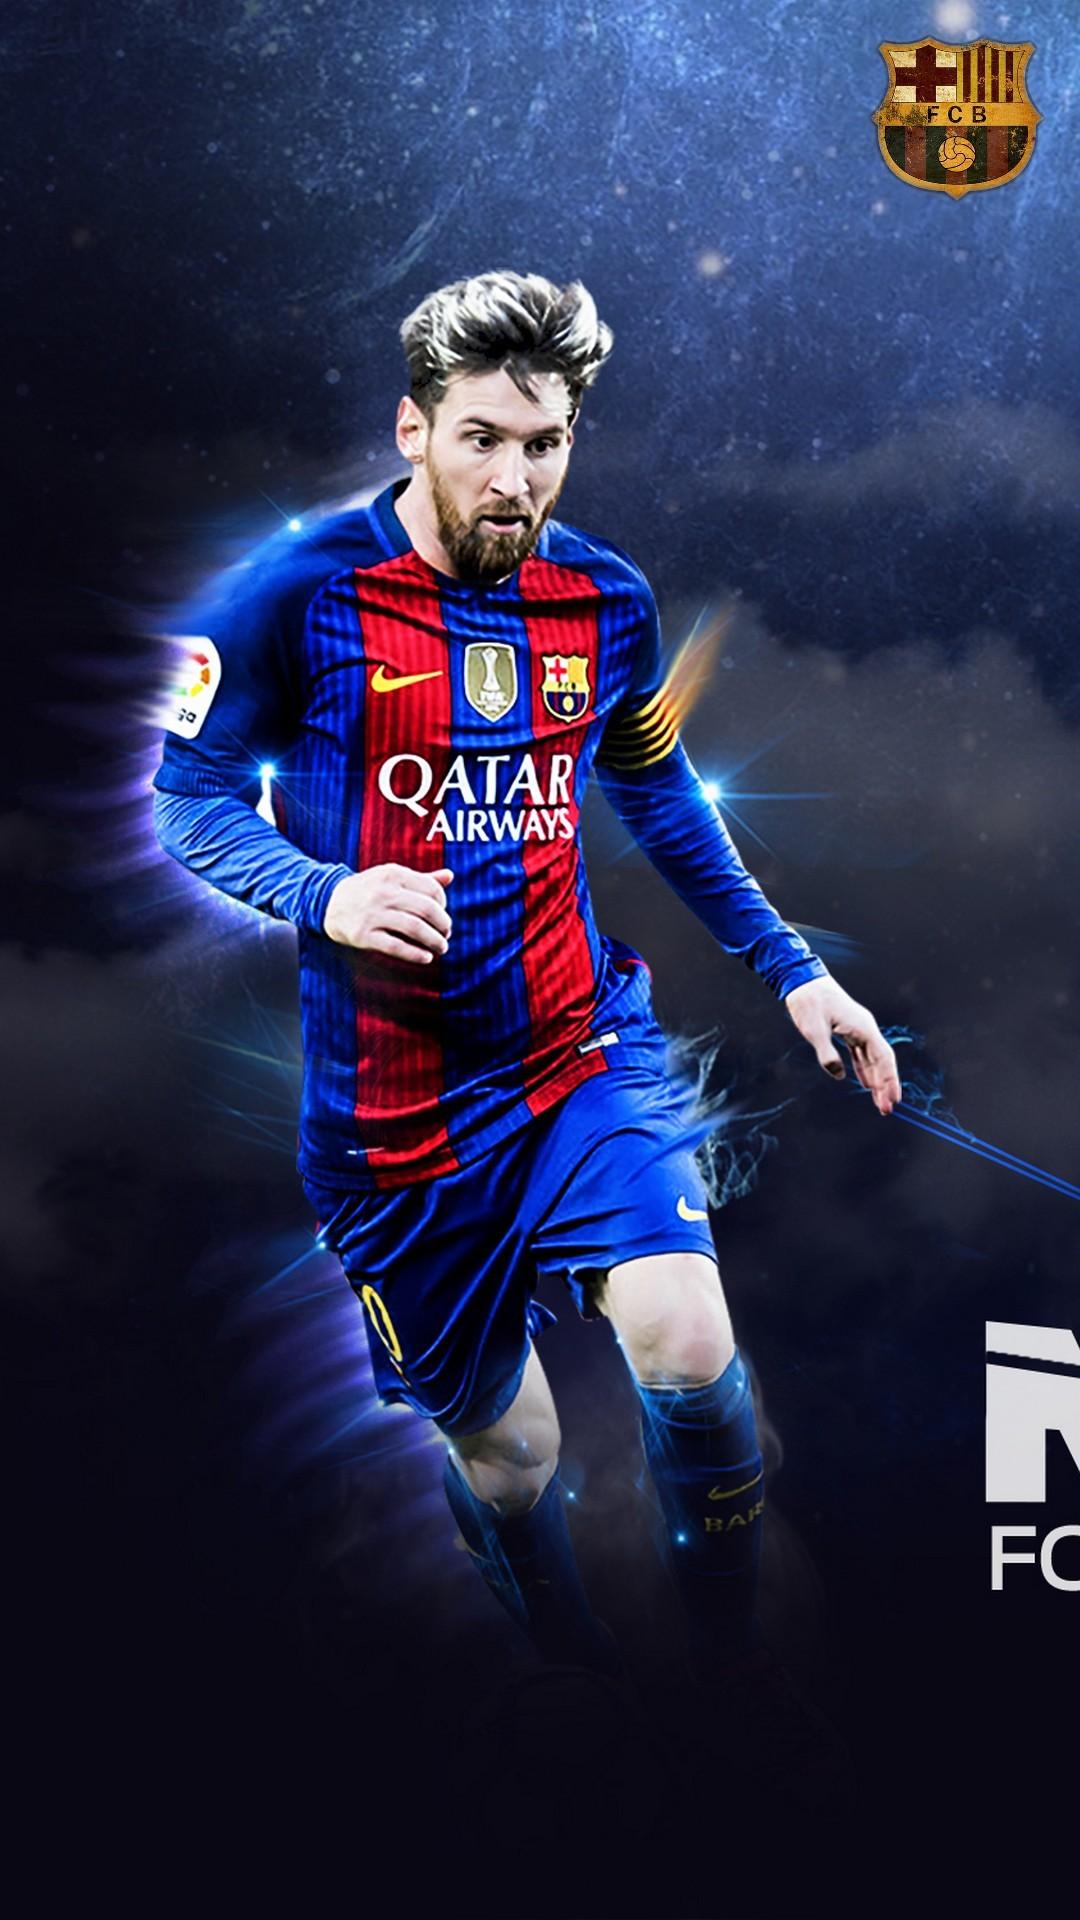 Với Messi 10 iPhone Wallpaper, bạn sẽ không chỉ được tận hưởng vẻ ngoài hoàn hảo của Messi mà còn là niềm tự hào khi sử dụng chiếc điện thoại của mình. Tải về hình nền này ngay từ bây giờ!